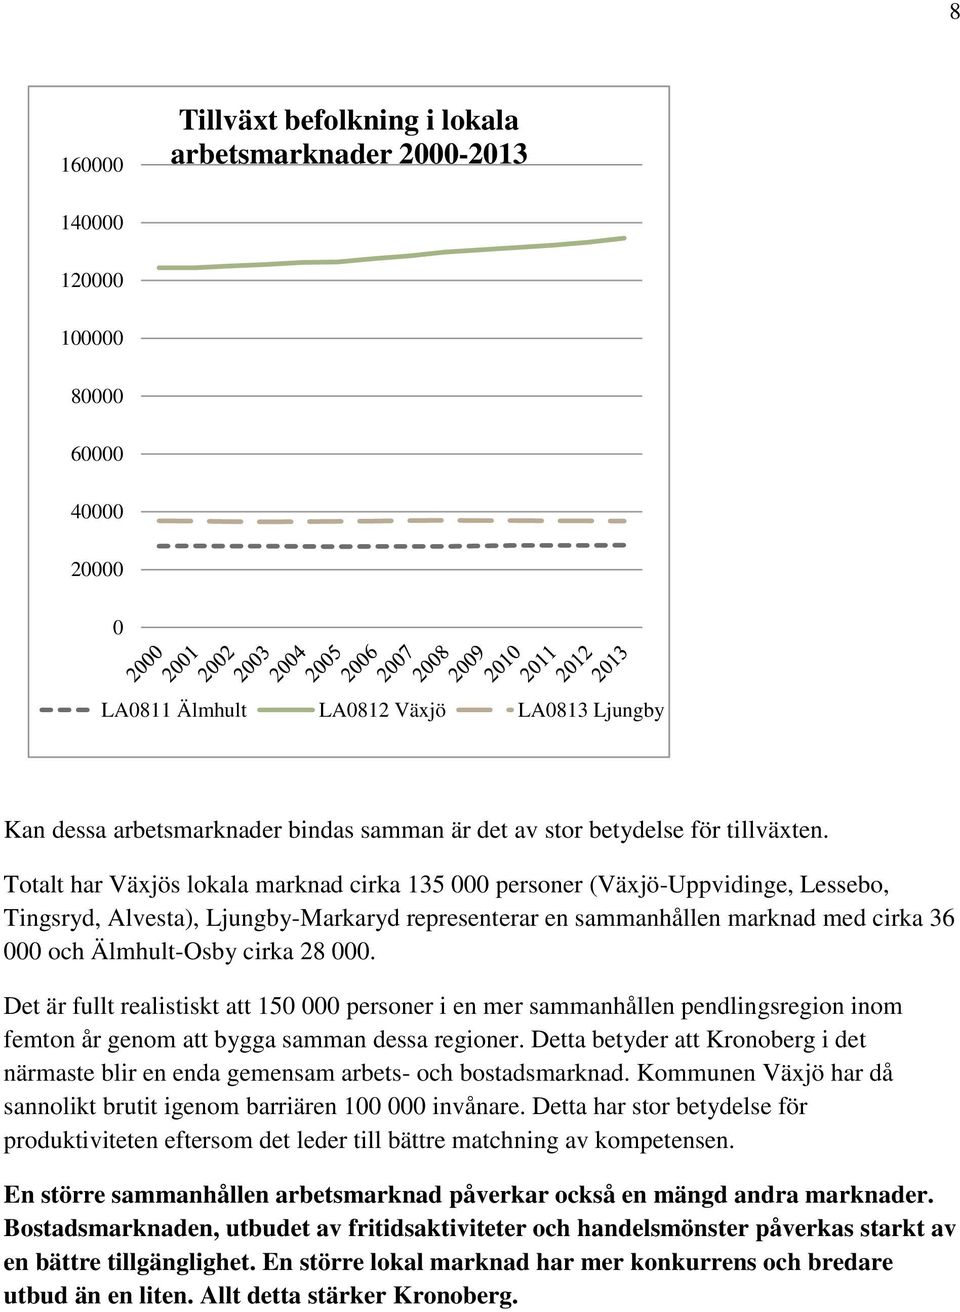 Totalt har Växjös lokala marknad cirka 135 000 personer (Växjö-Uppvidinge, Lessebo, Tingsryd, Alvesta), Ljungby-Markaryd representerar en sammanhållen marknad med cirka 36 000 och Älmhult-Osby cirka